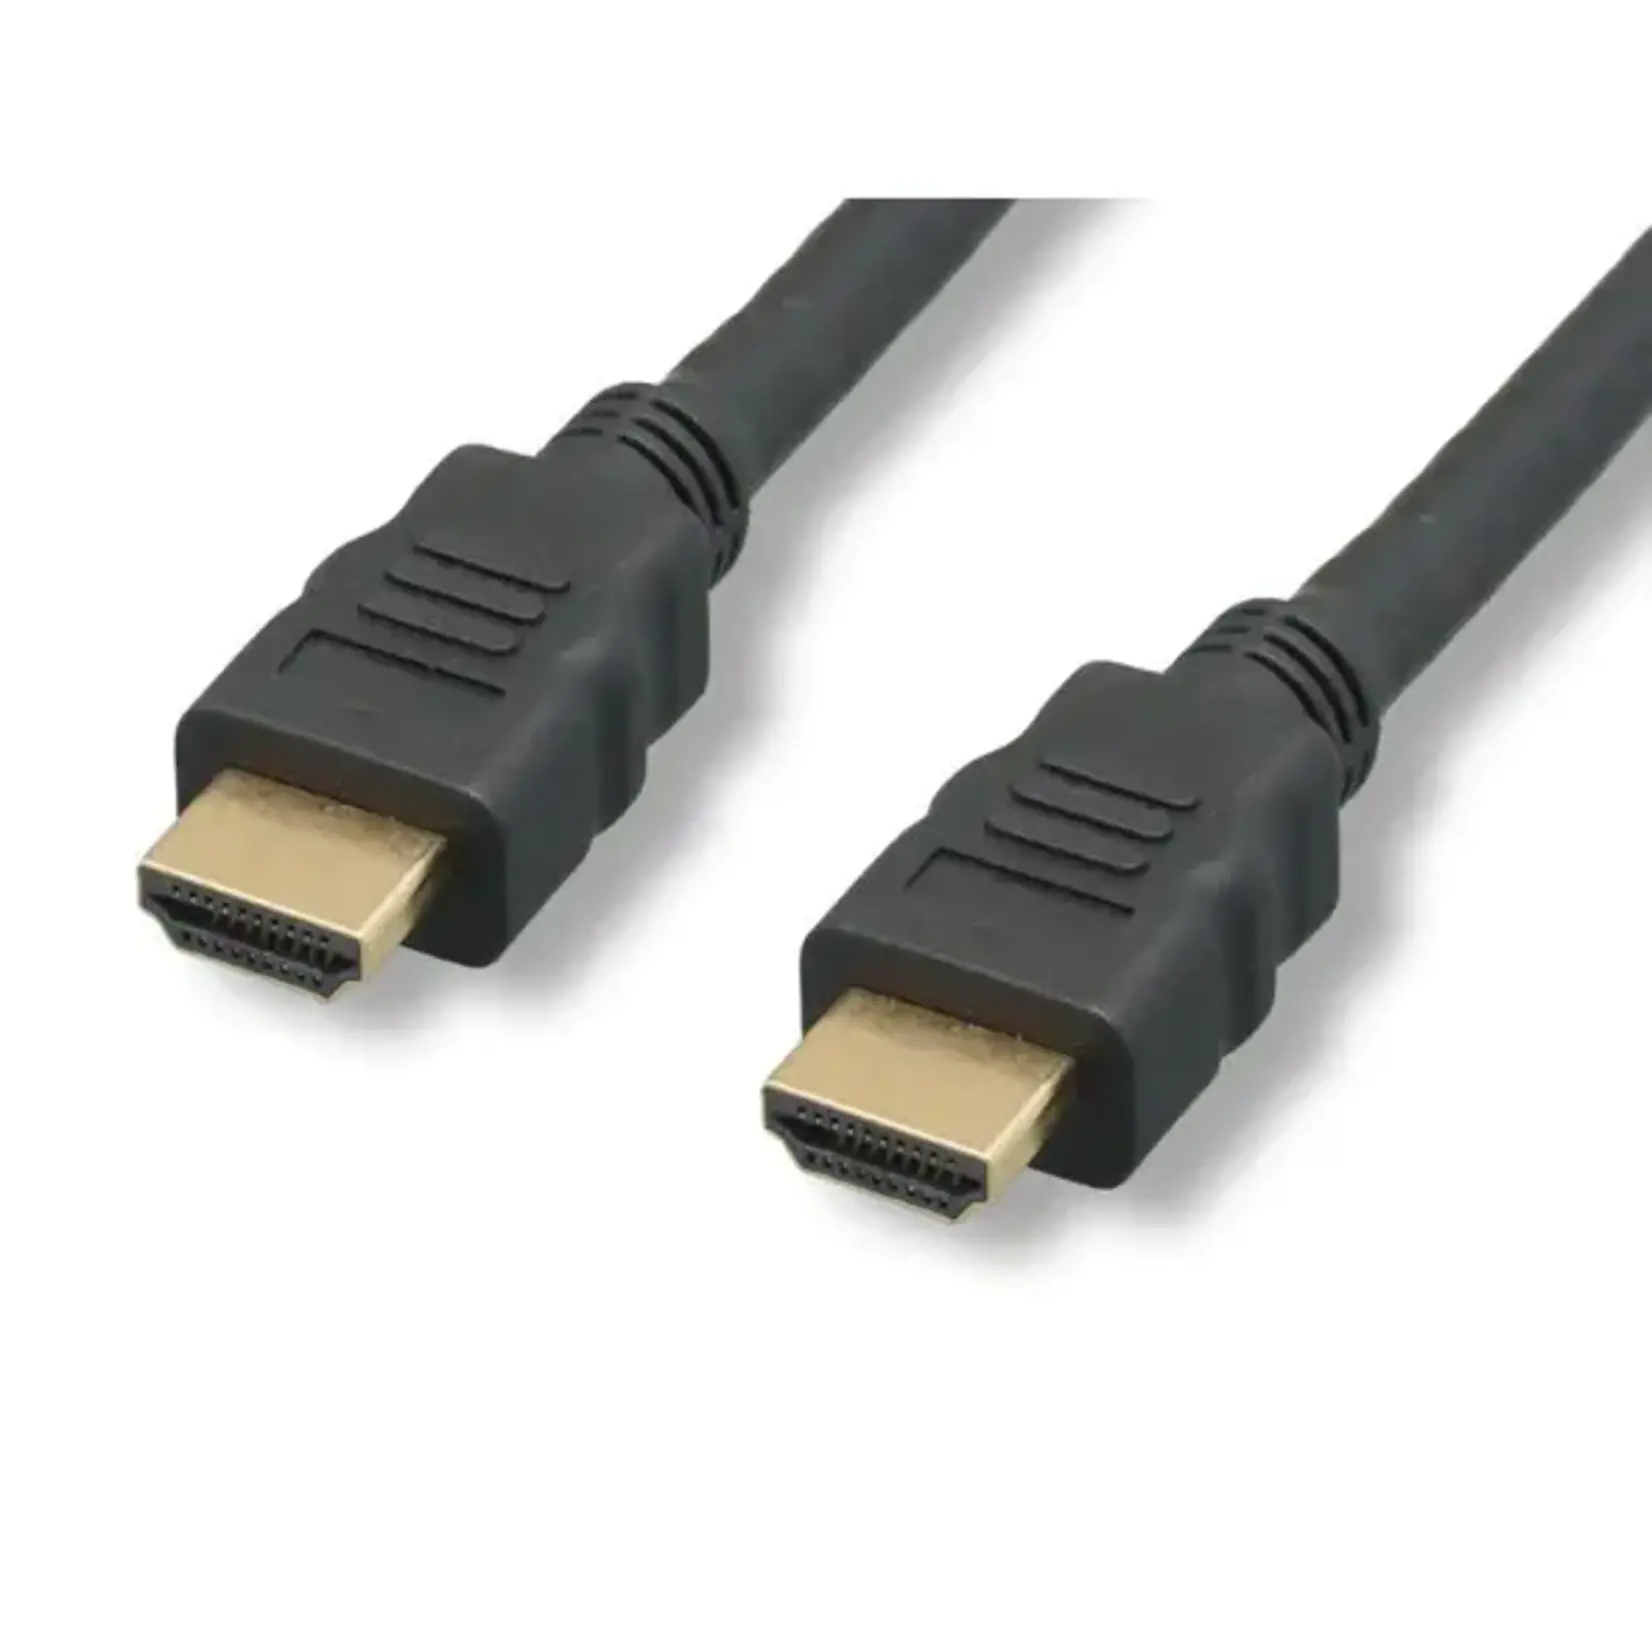 25' High Speed HDMI w/Ethernet